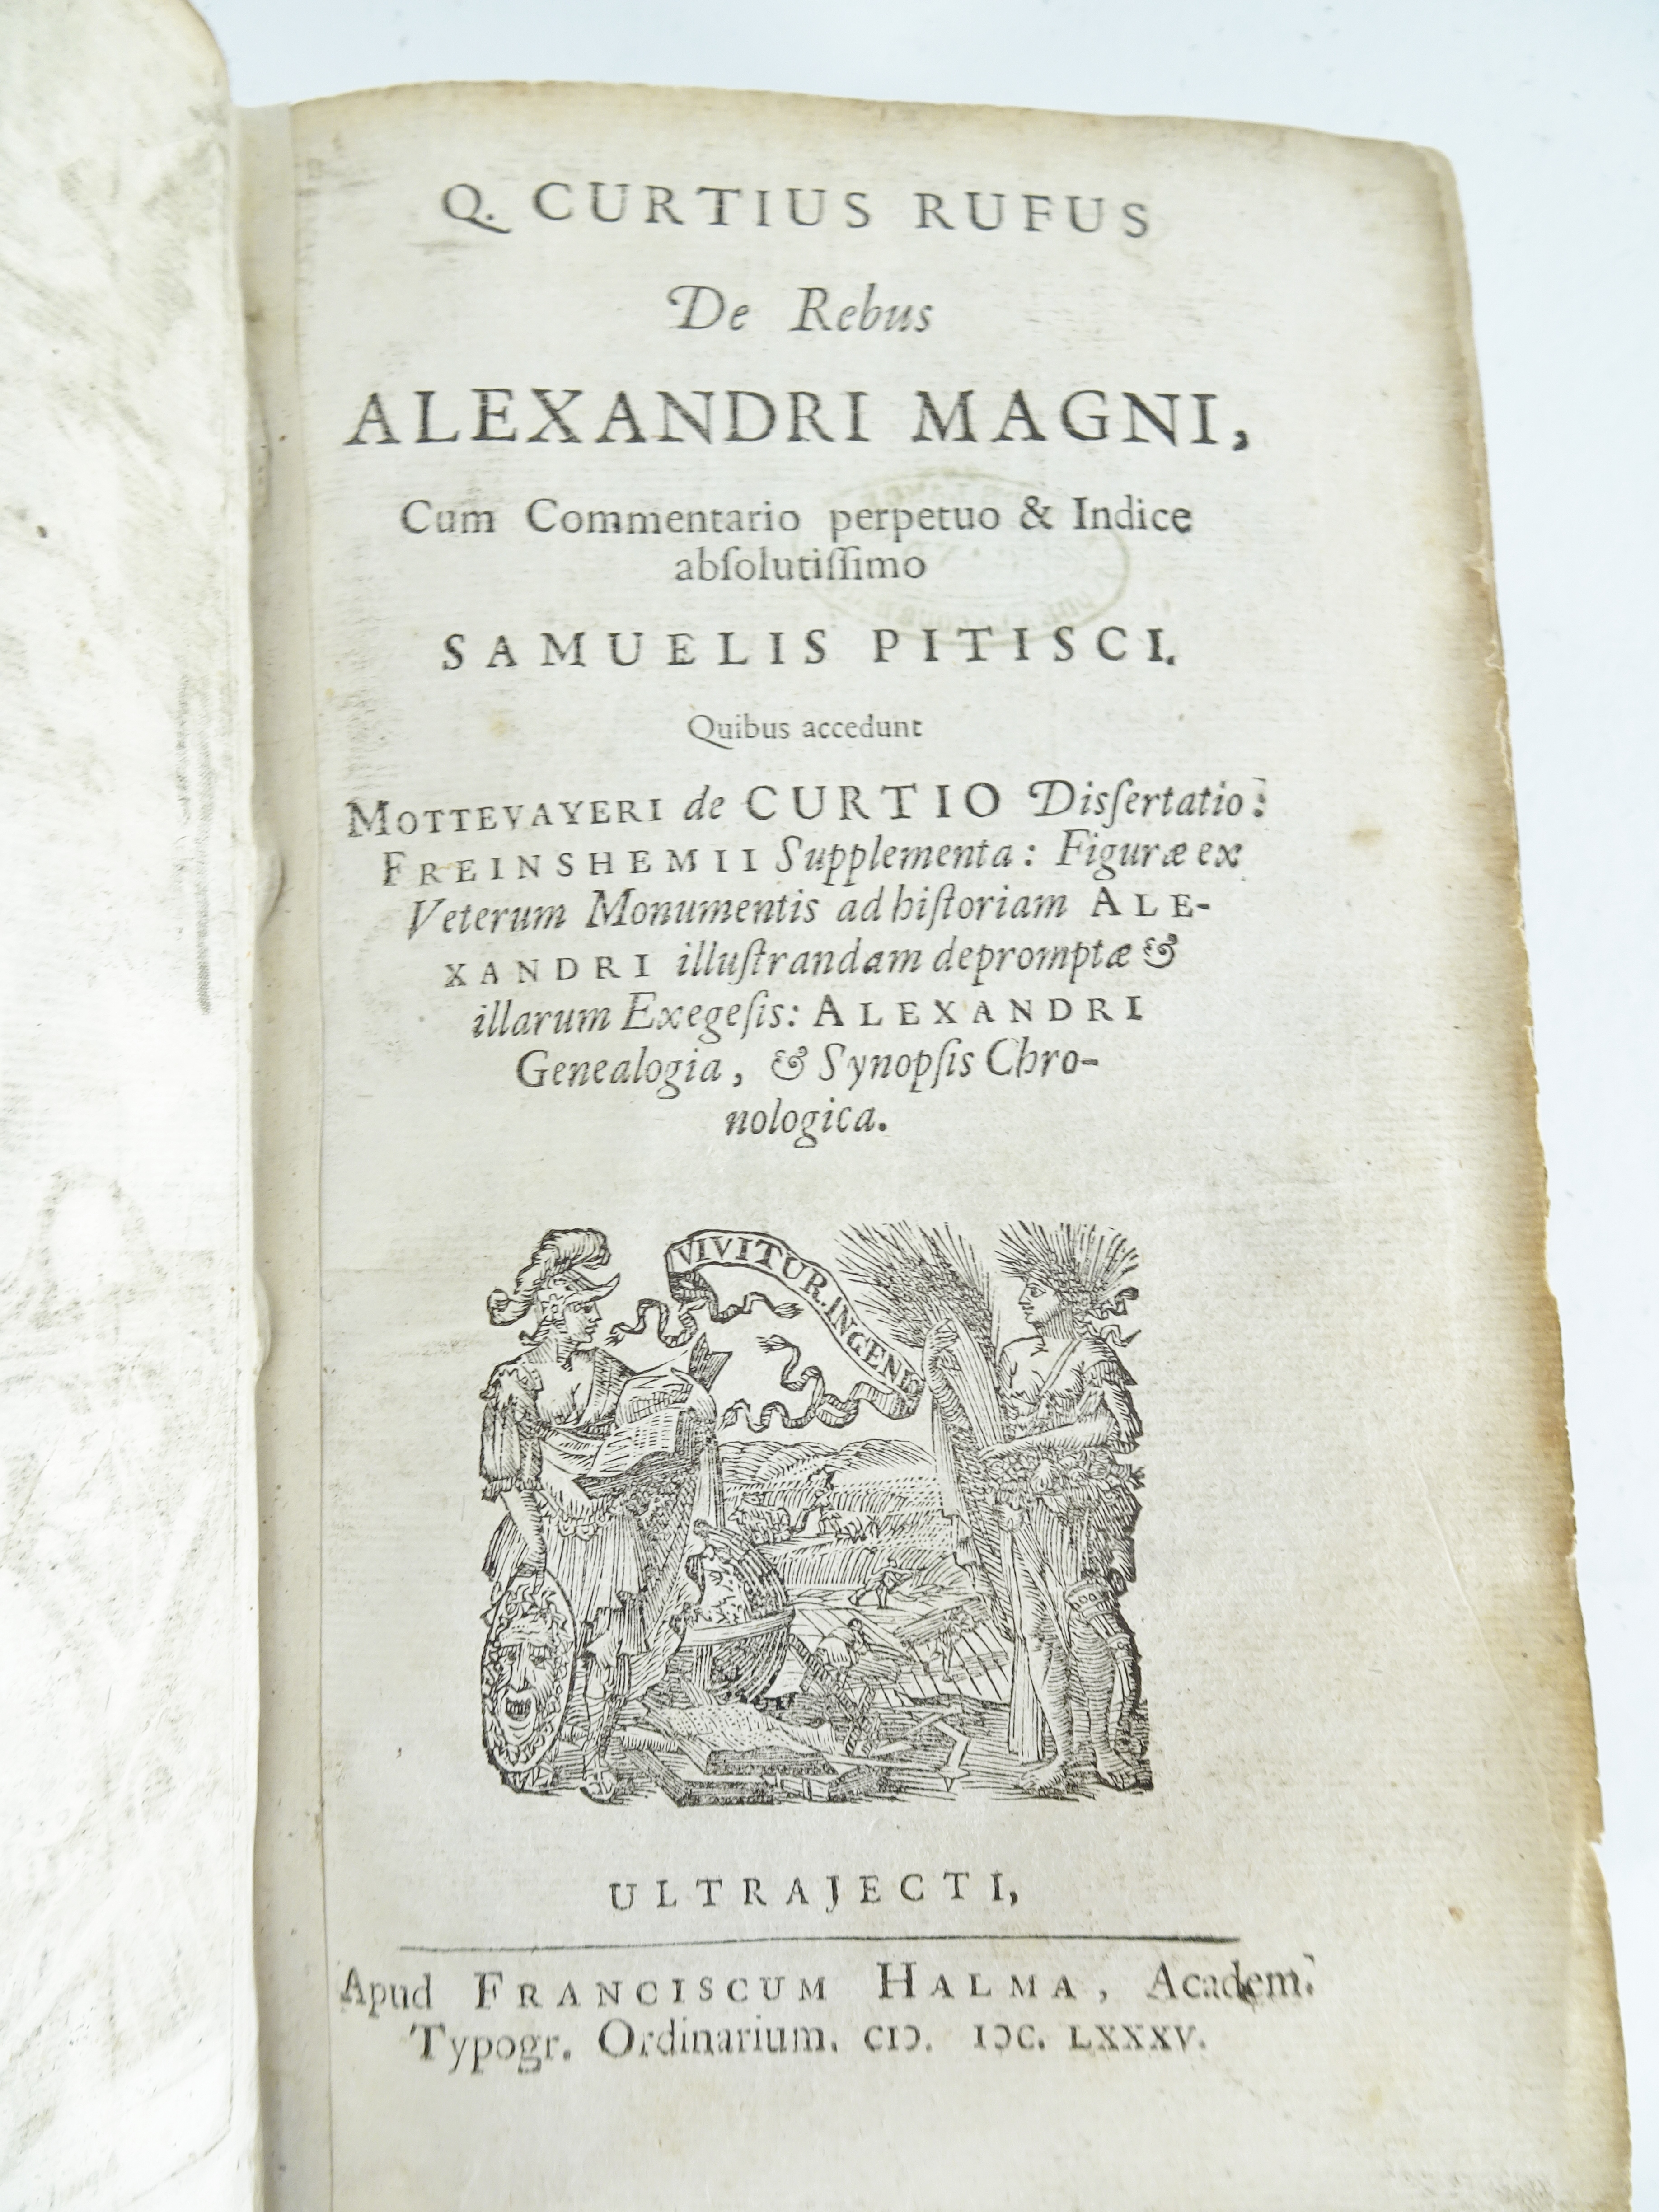 |History| Rufus Quintus Curtius, "De Rebus Alexandri Magni cum commentario perpetuo &indice absoluti